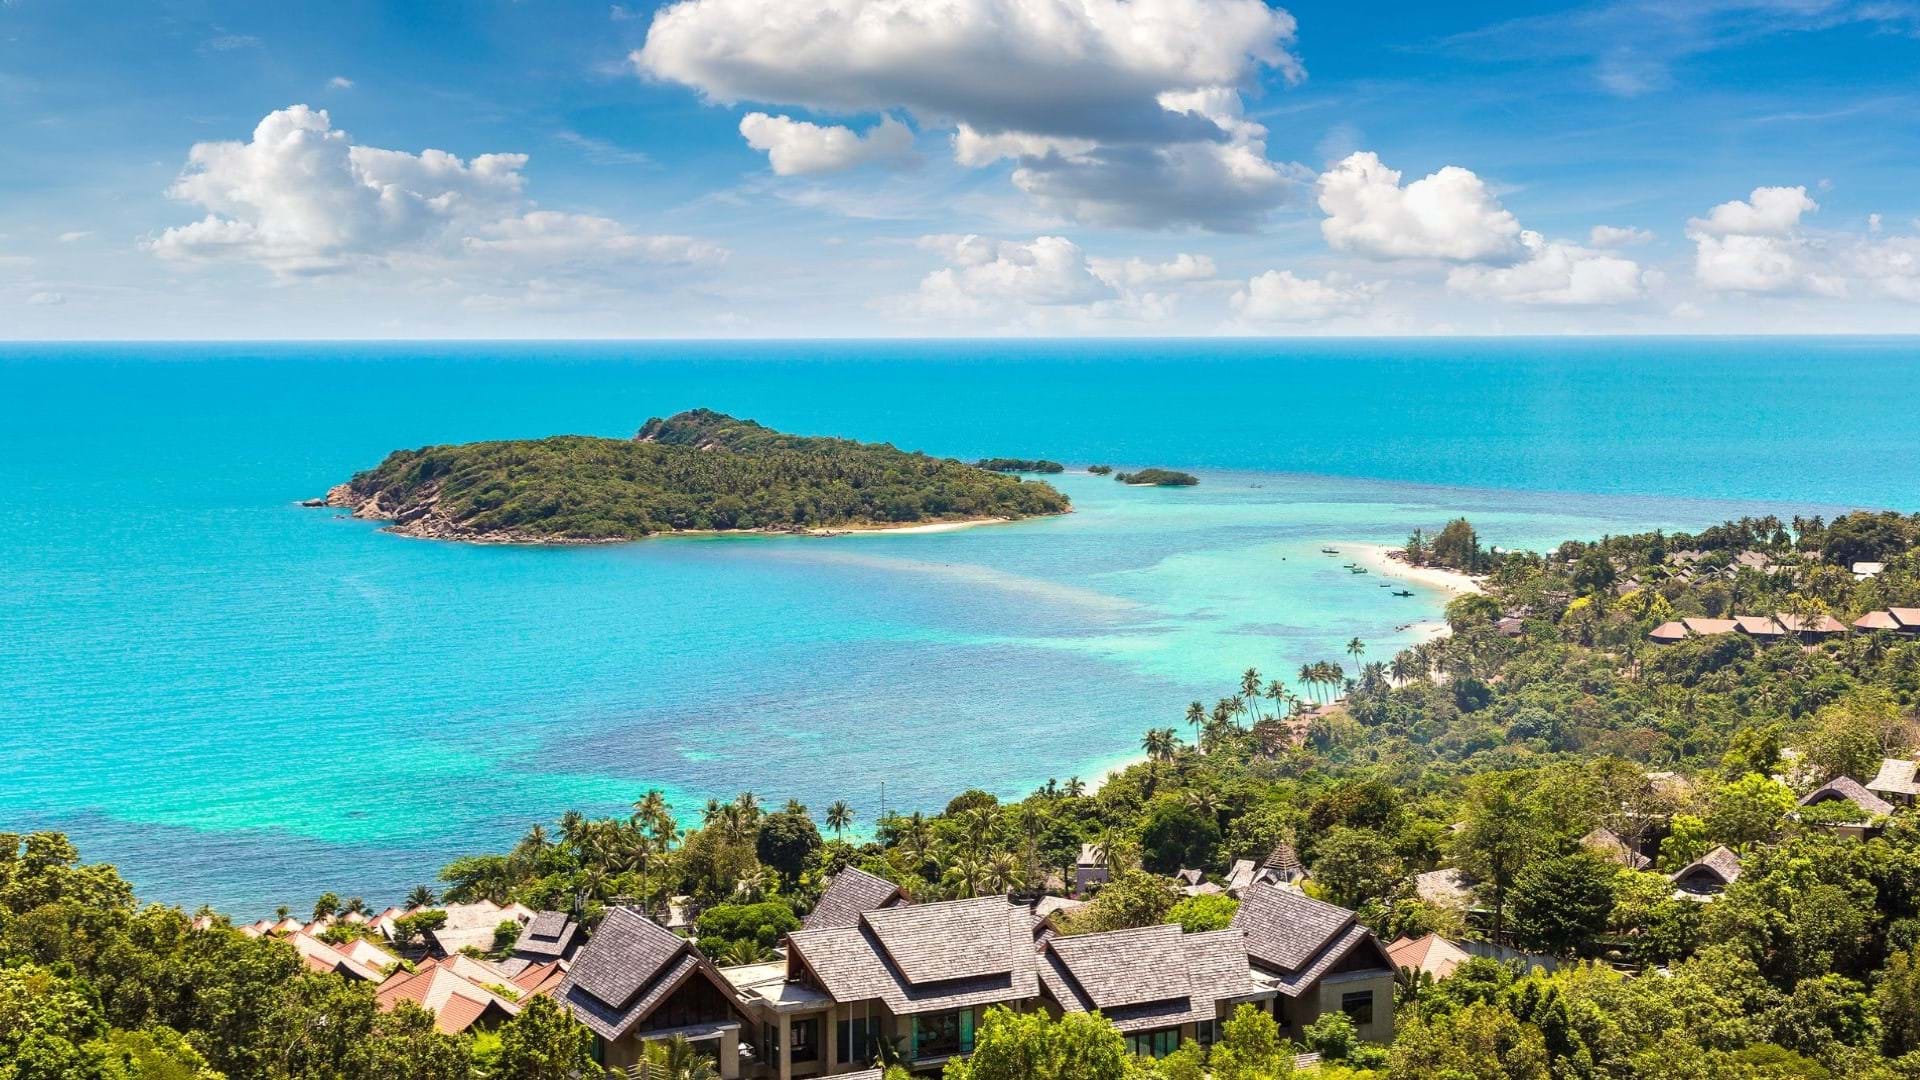 Ostrvo Ko Samui na Tajlandu. Jedno od najlepših ostrva u Tajlandskom zalivu. Karakterističn je po divljoj prirodi i prelepim plažama, zelenim džunglama i odličnim hotelima.